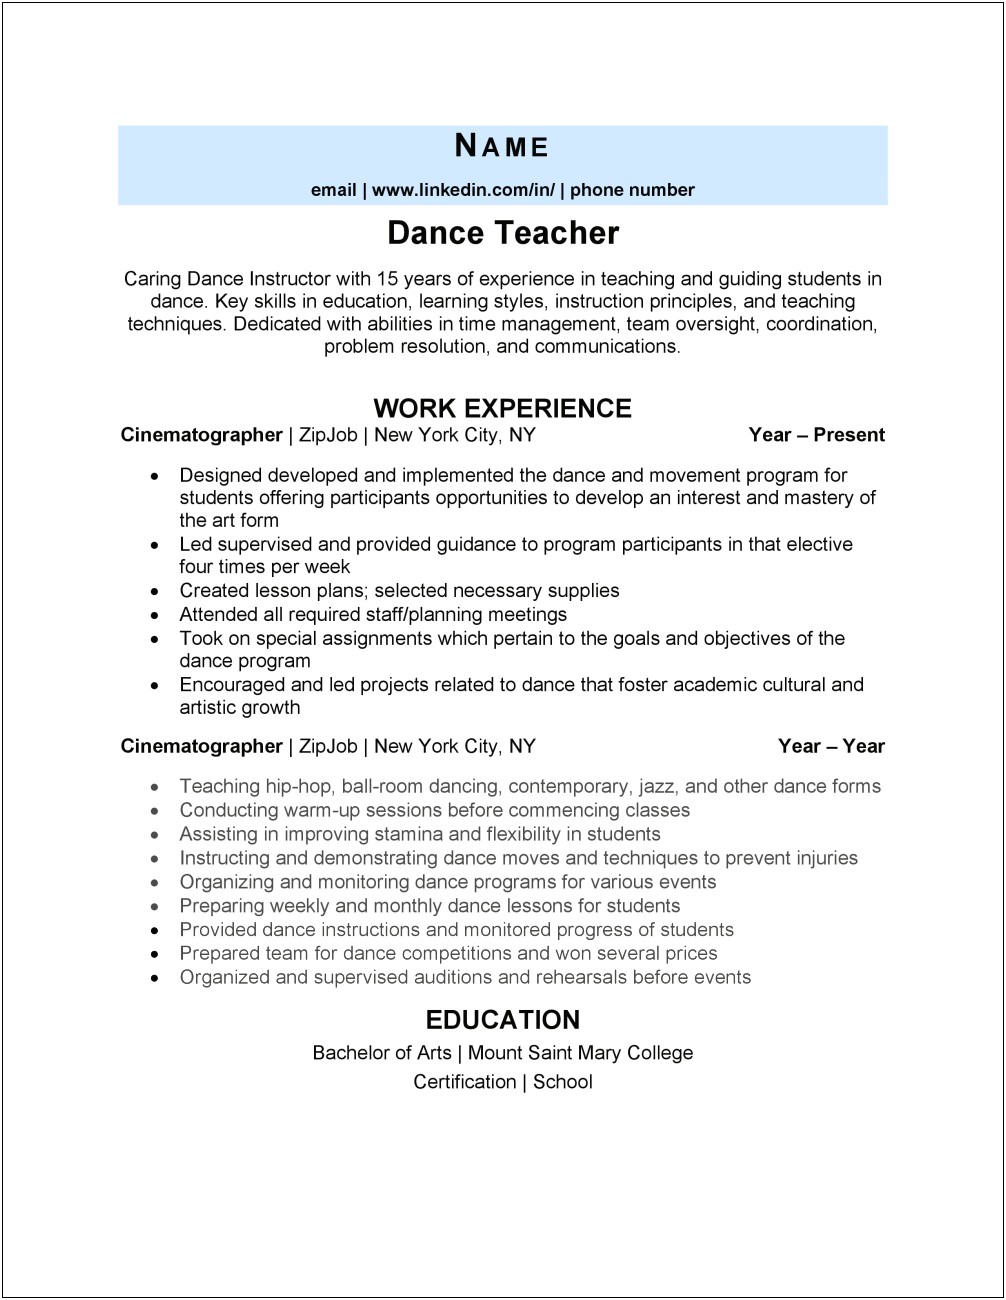 Resume Objective For Dance Teacher